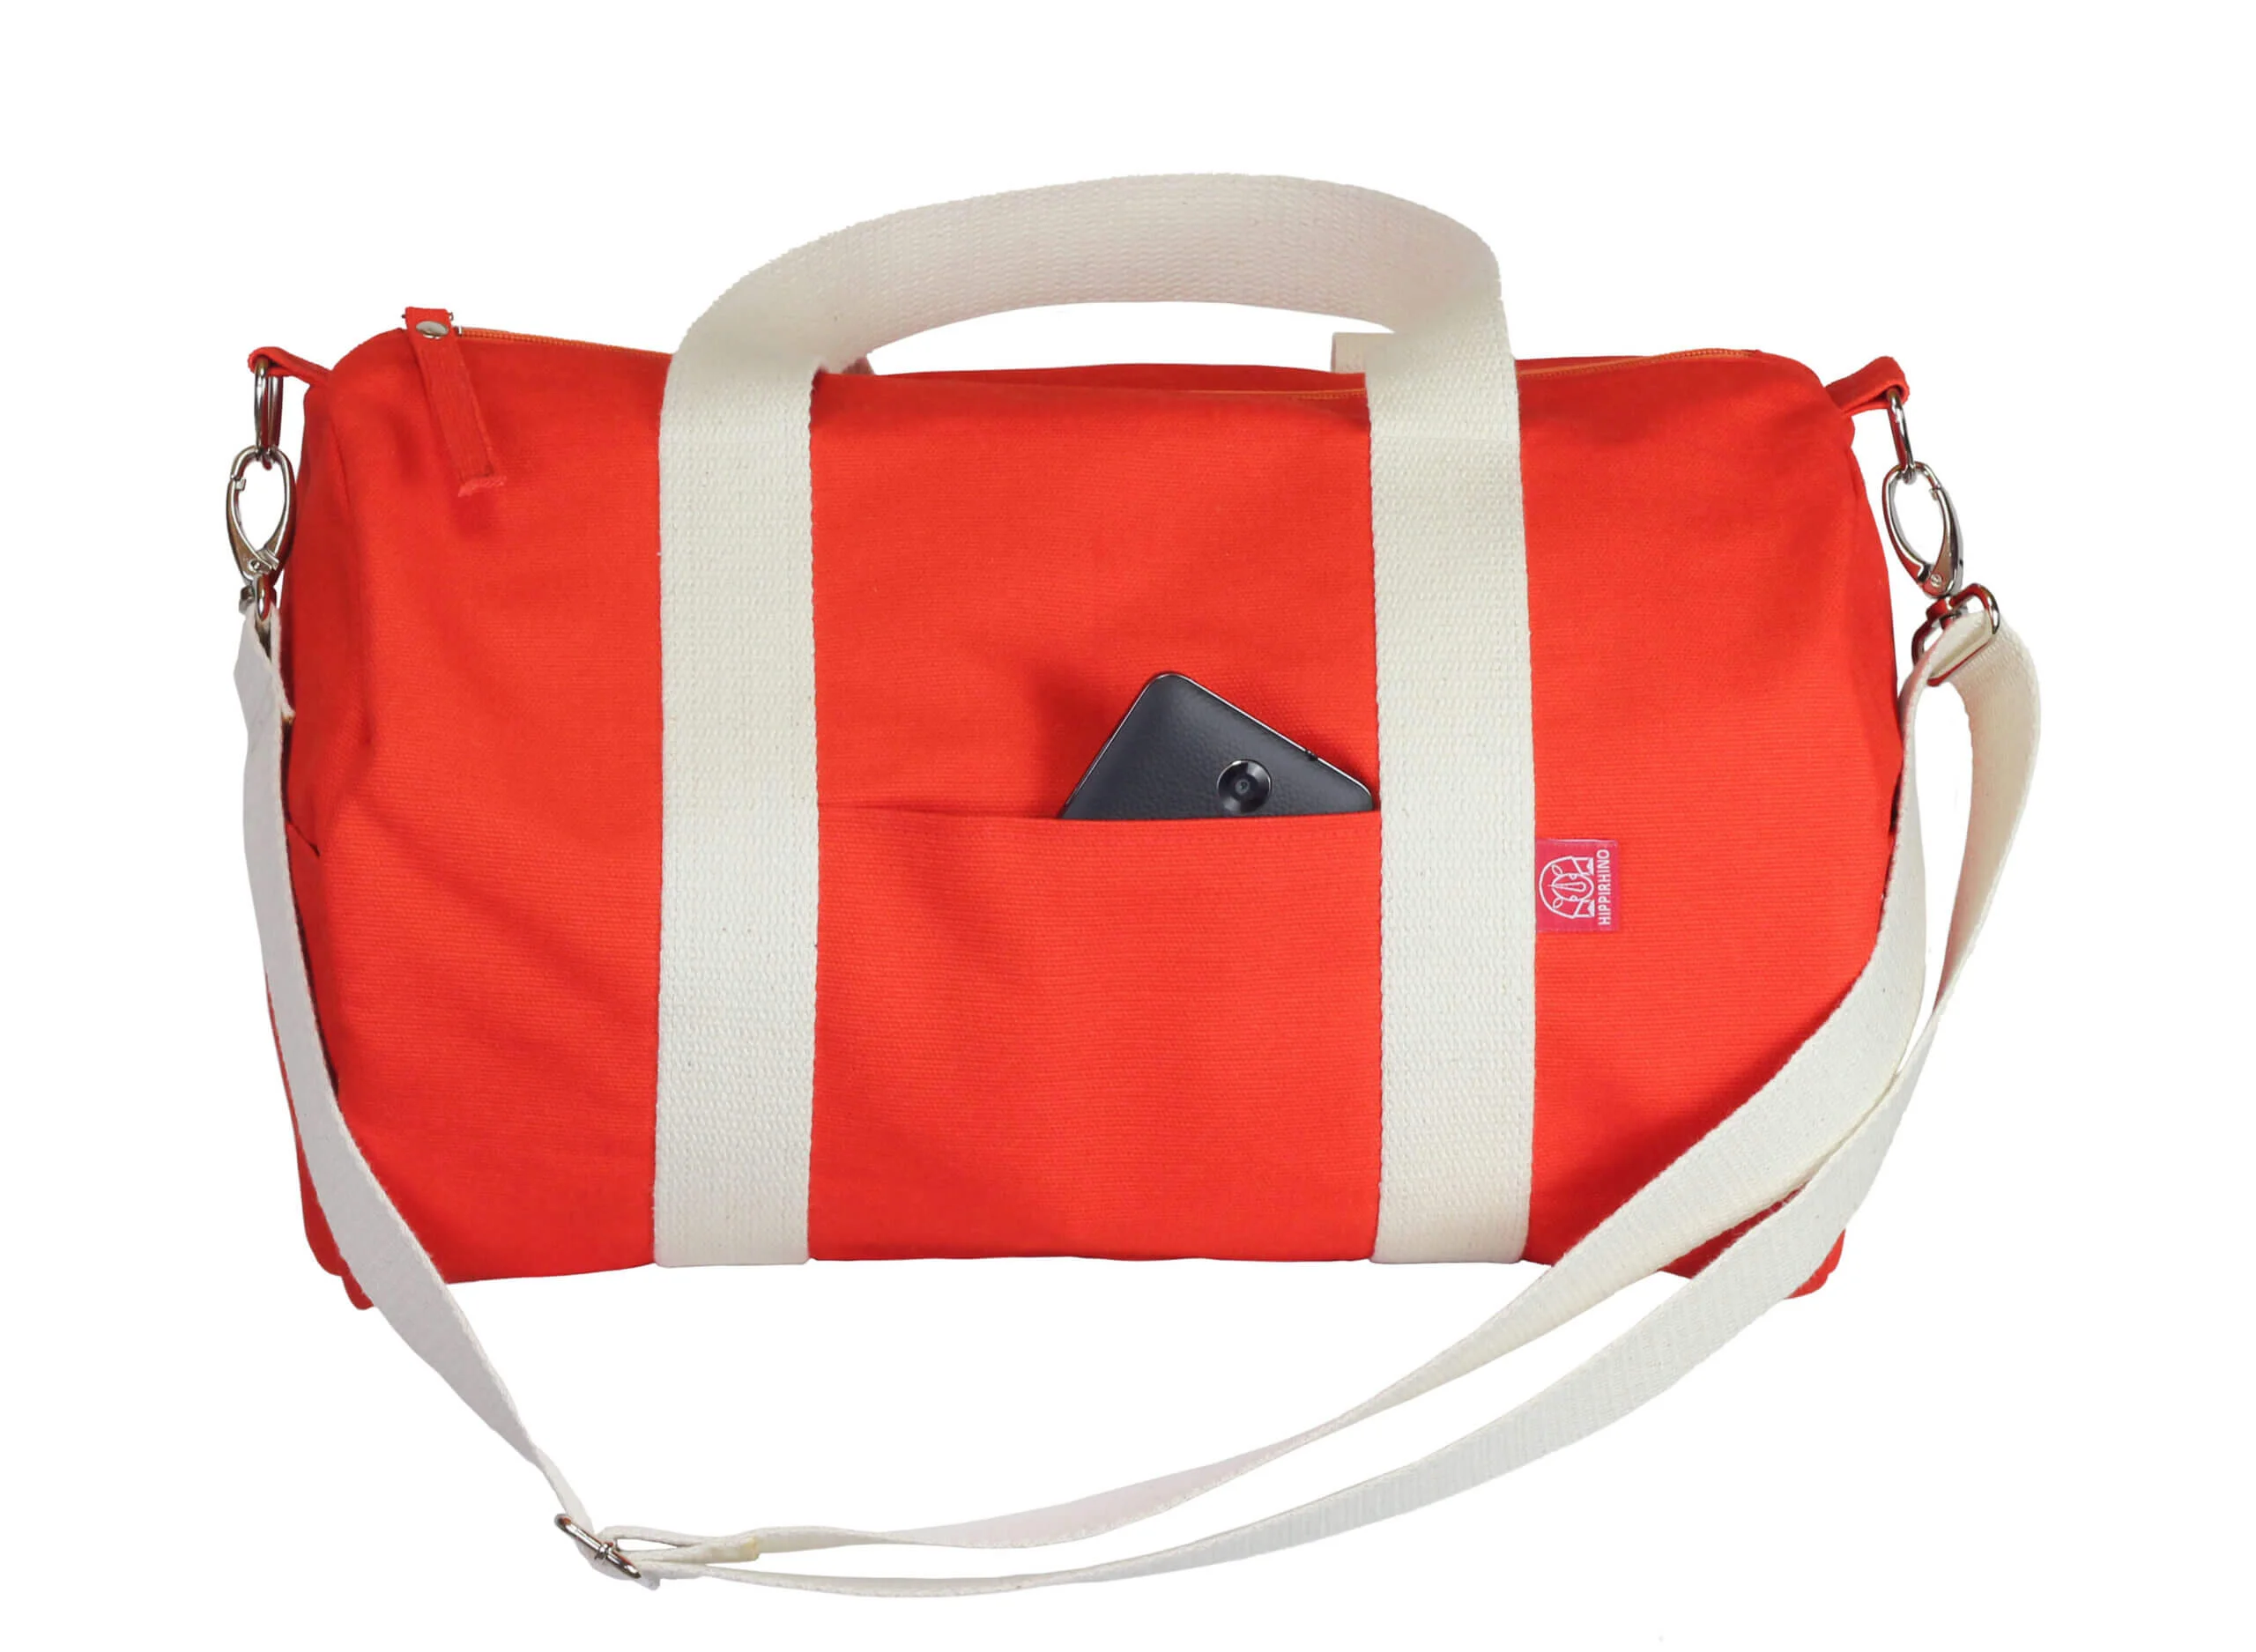 Gaiam Yoga Mat Bag Brown with Orange Interior Zip Duffle Gym Bag